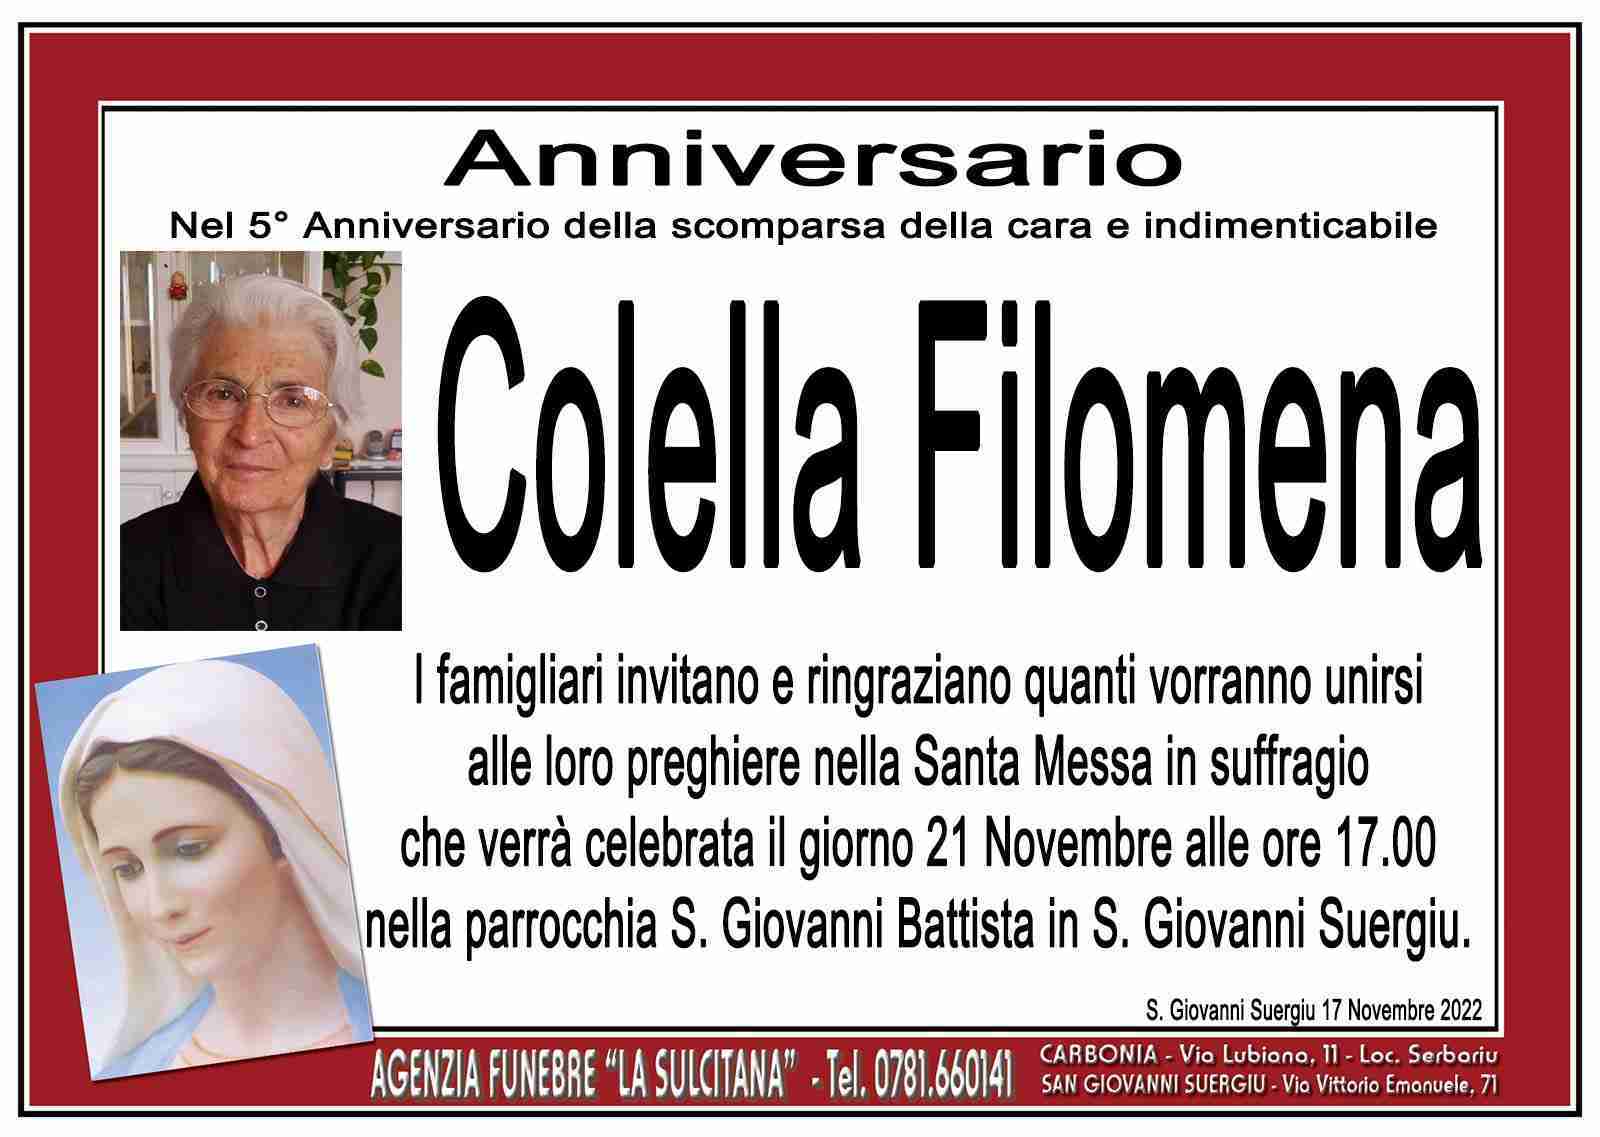 Filomena Colella